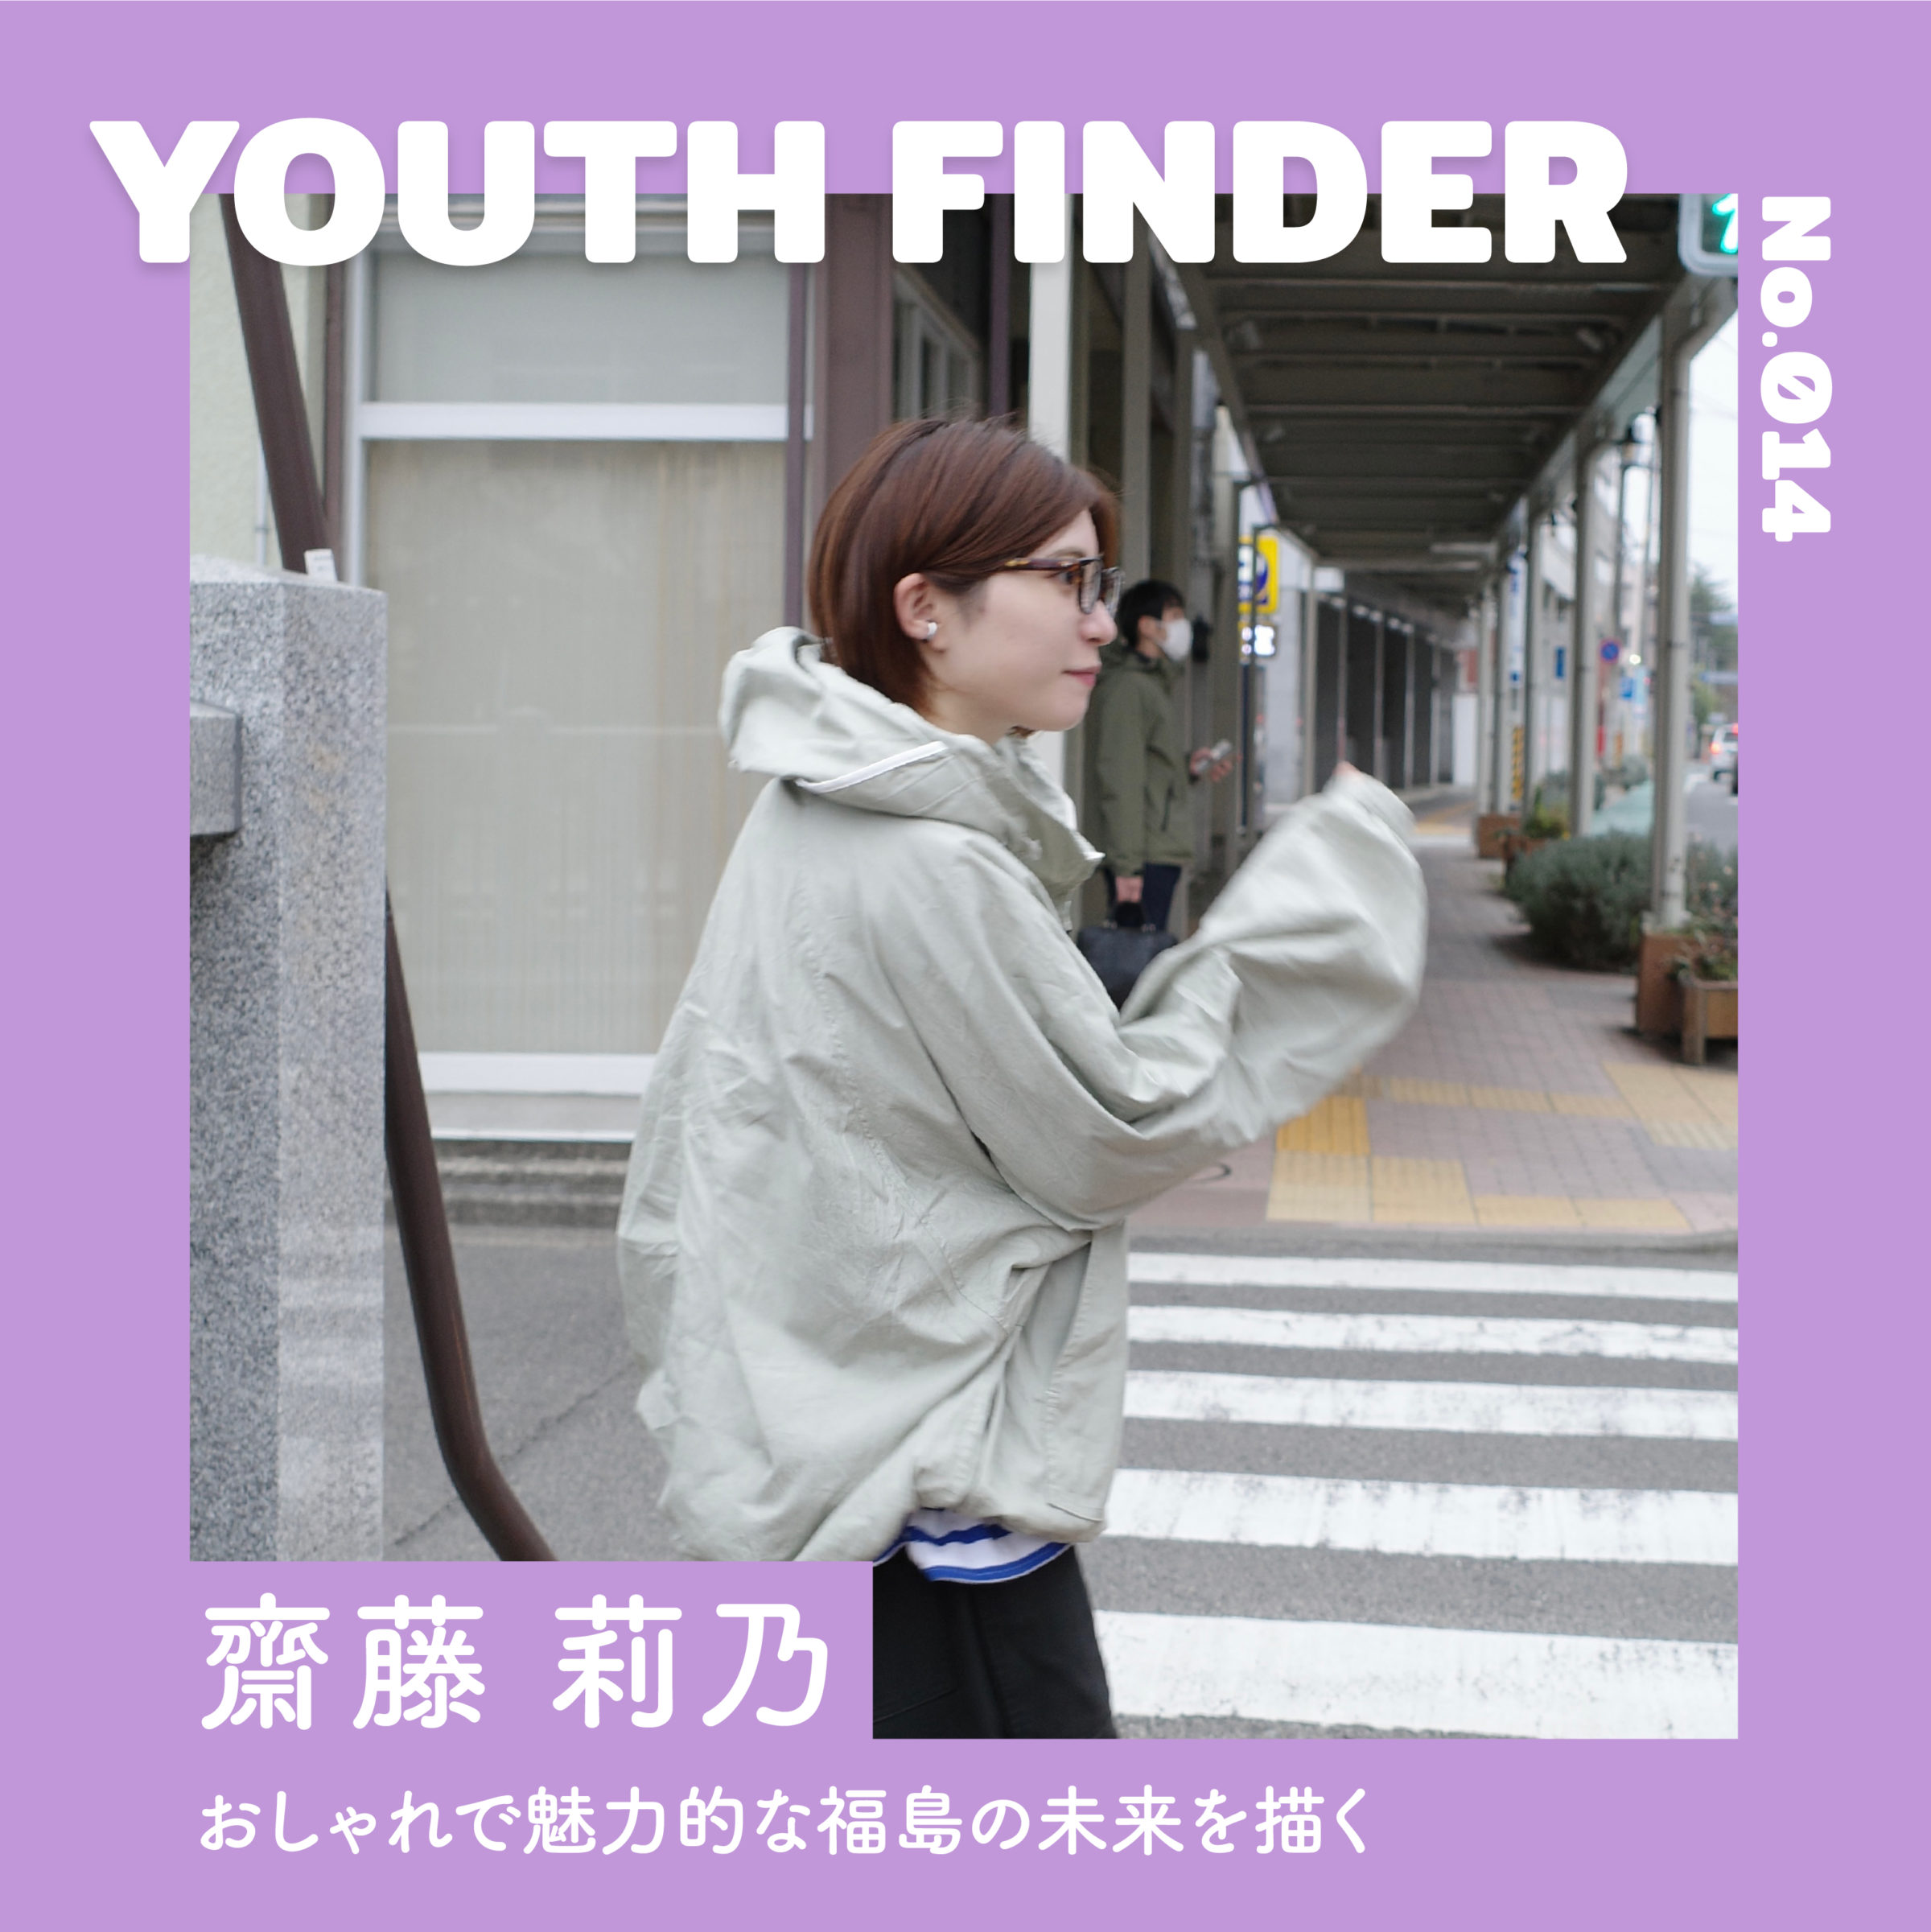 フリーマーケット｢germer｣を通じ、おしゃれで魅力的な福島の未来を描く 齋藤莉乃さん【Youth Finder】のサムネイル